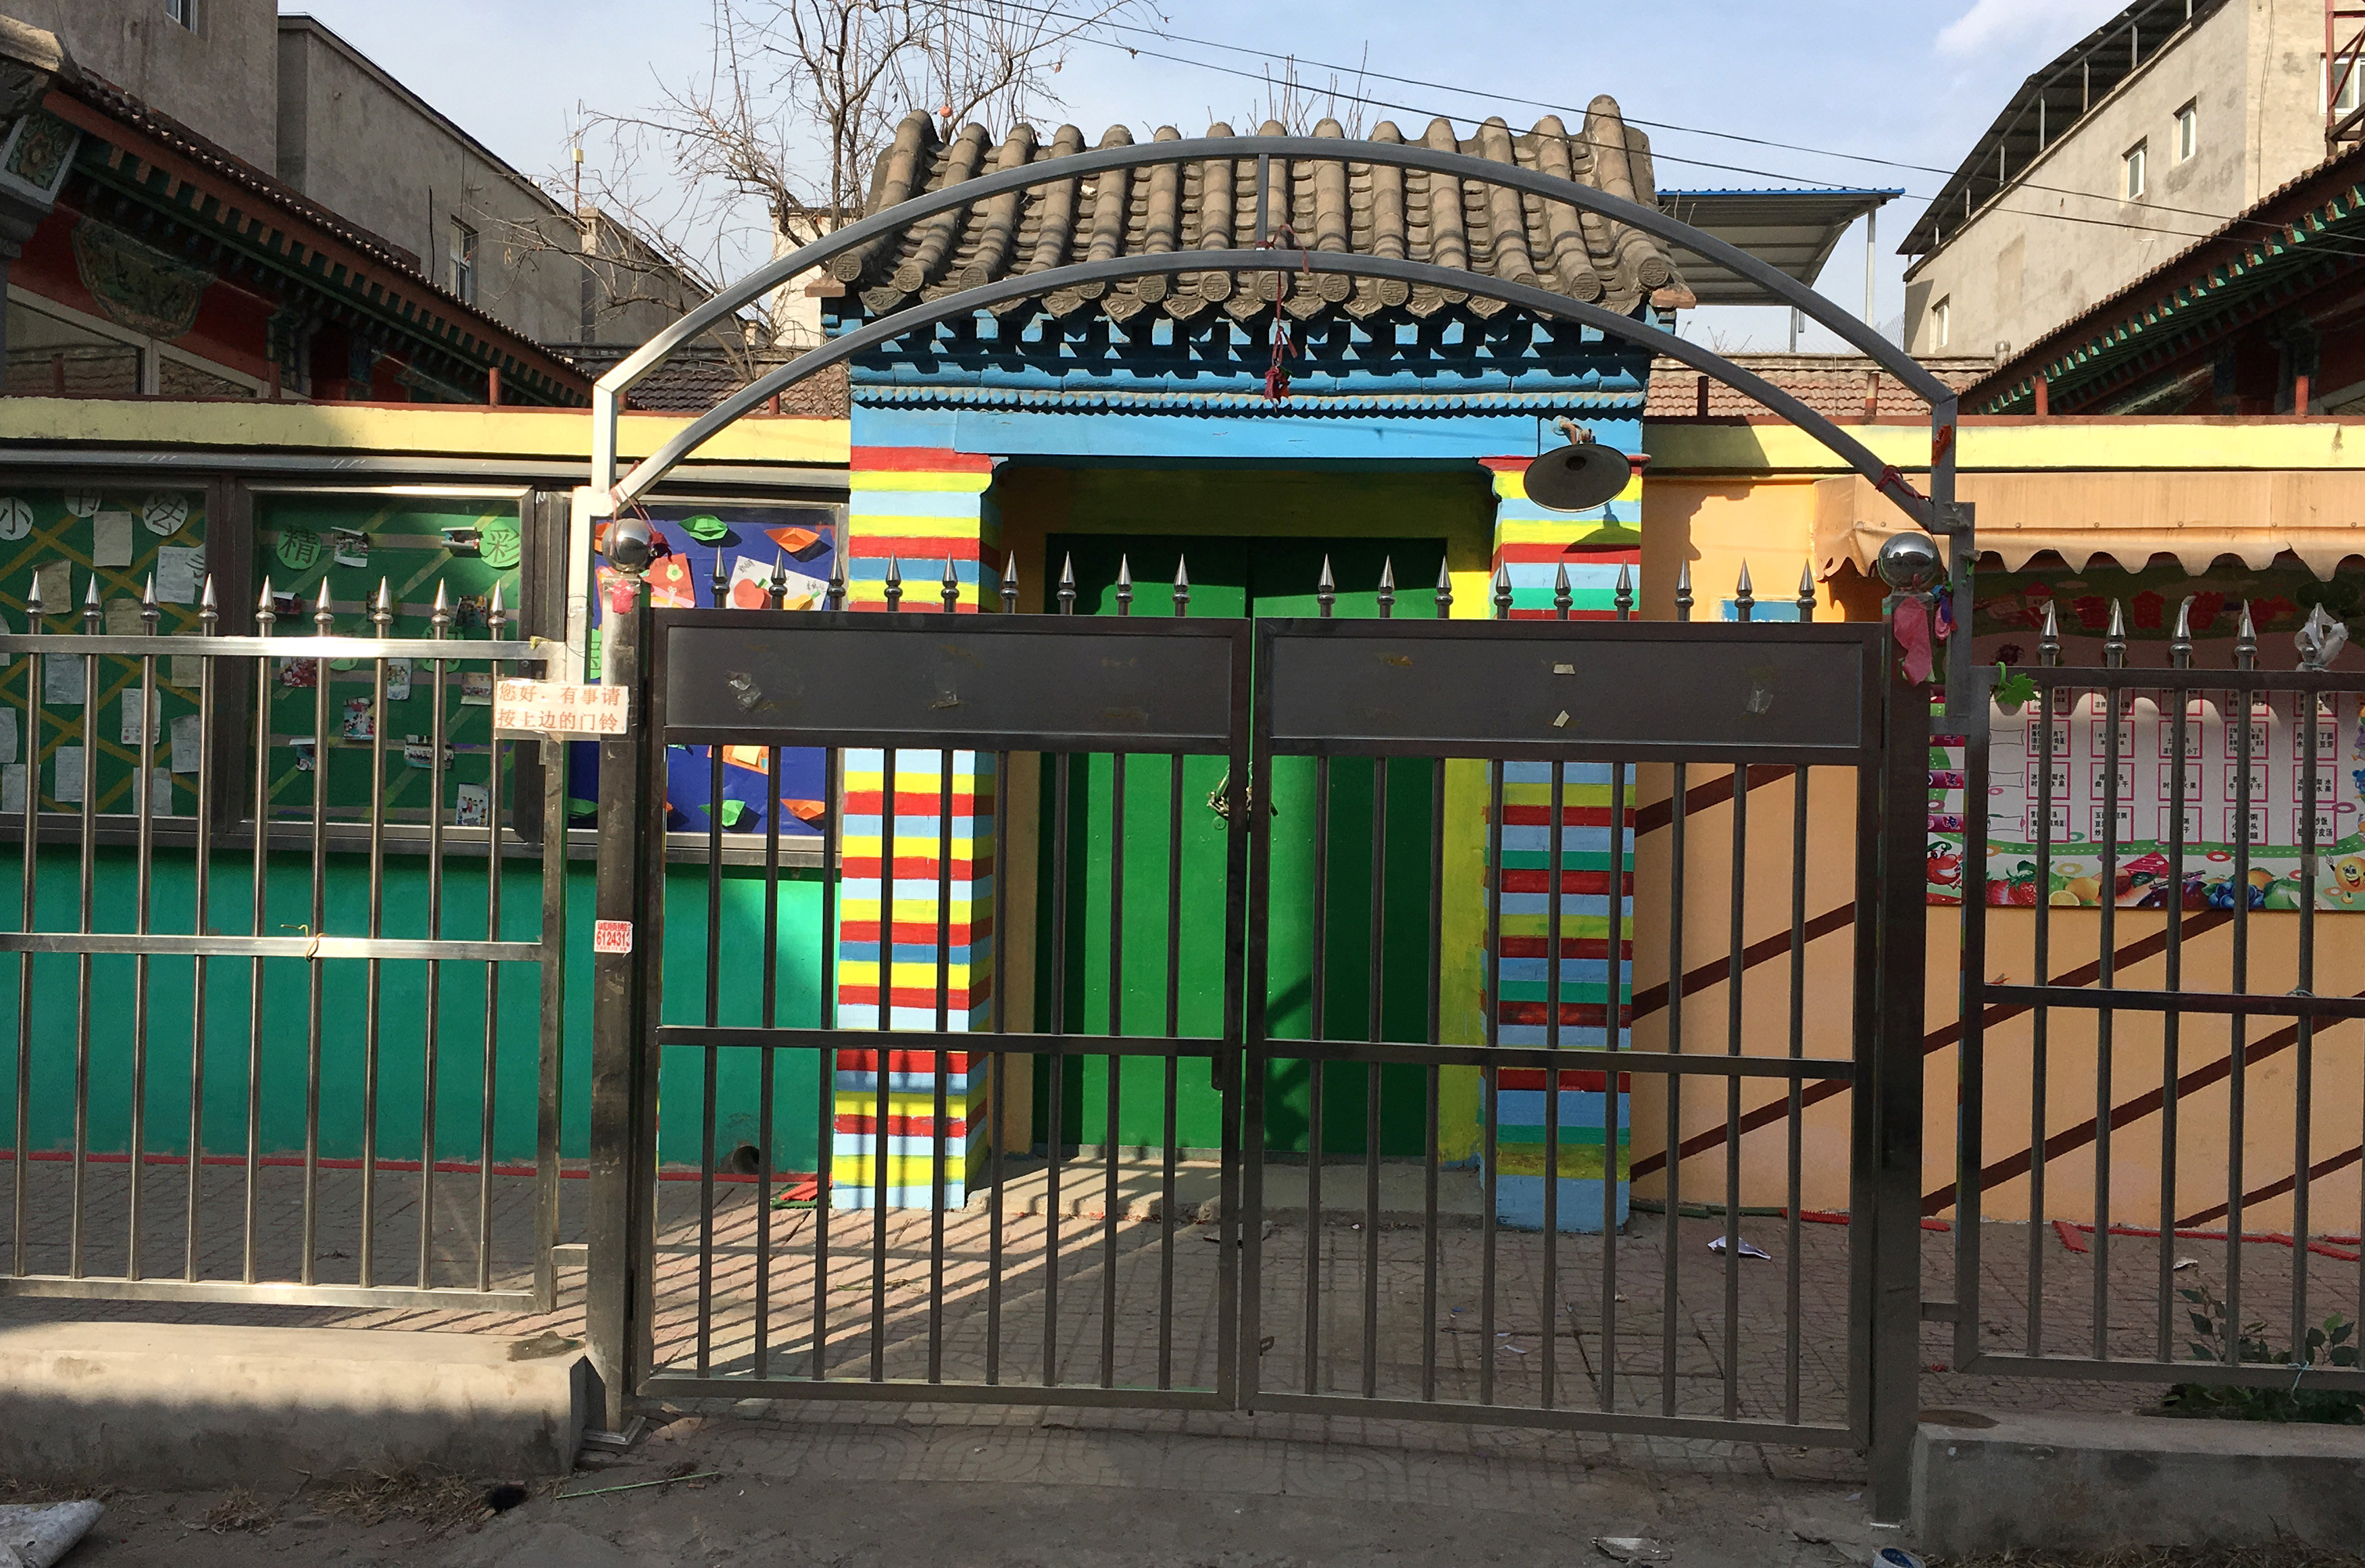 Beijing kindergarten teacher used needles to 'discipline' children